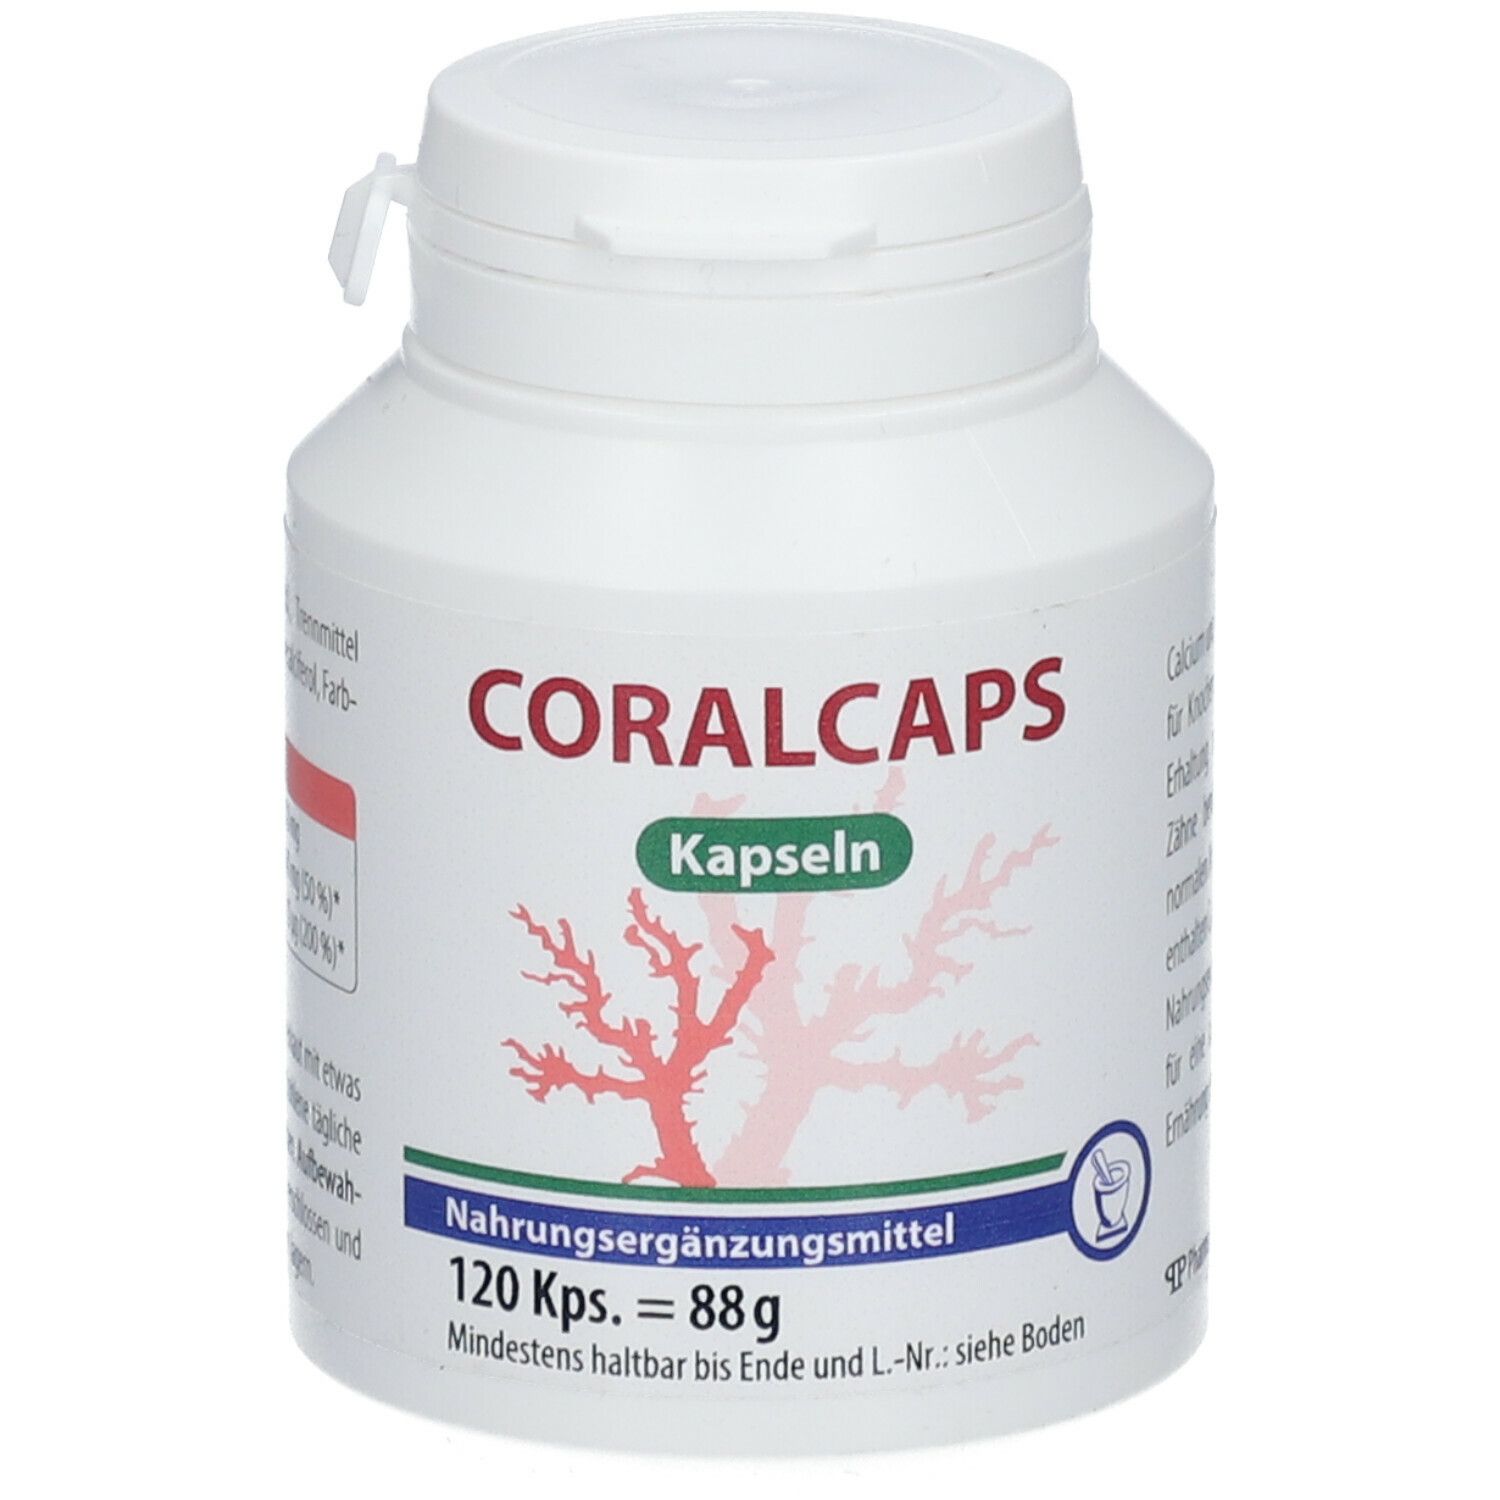 Coralcaps